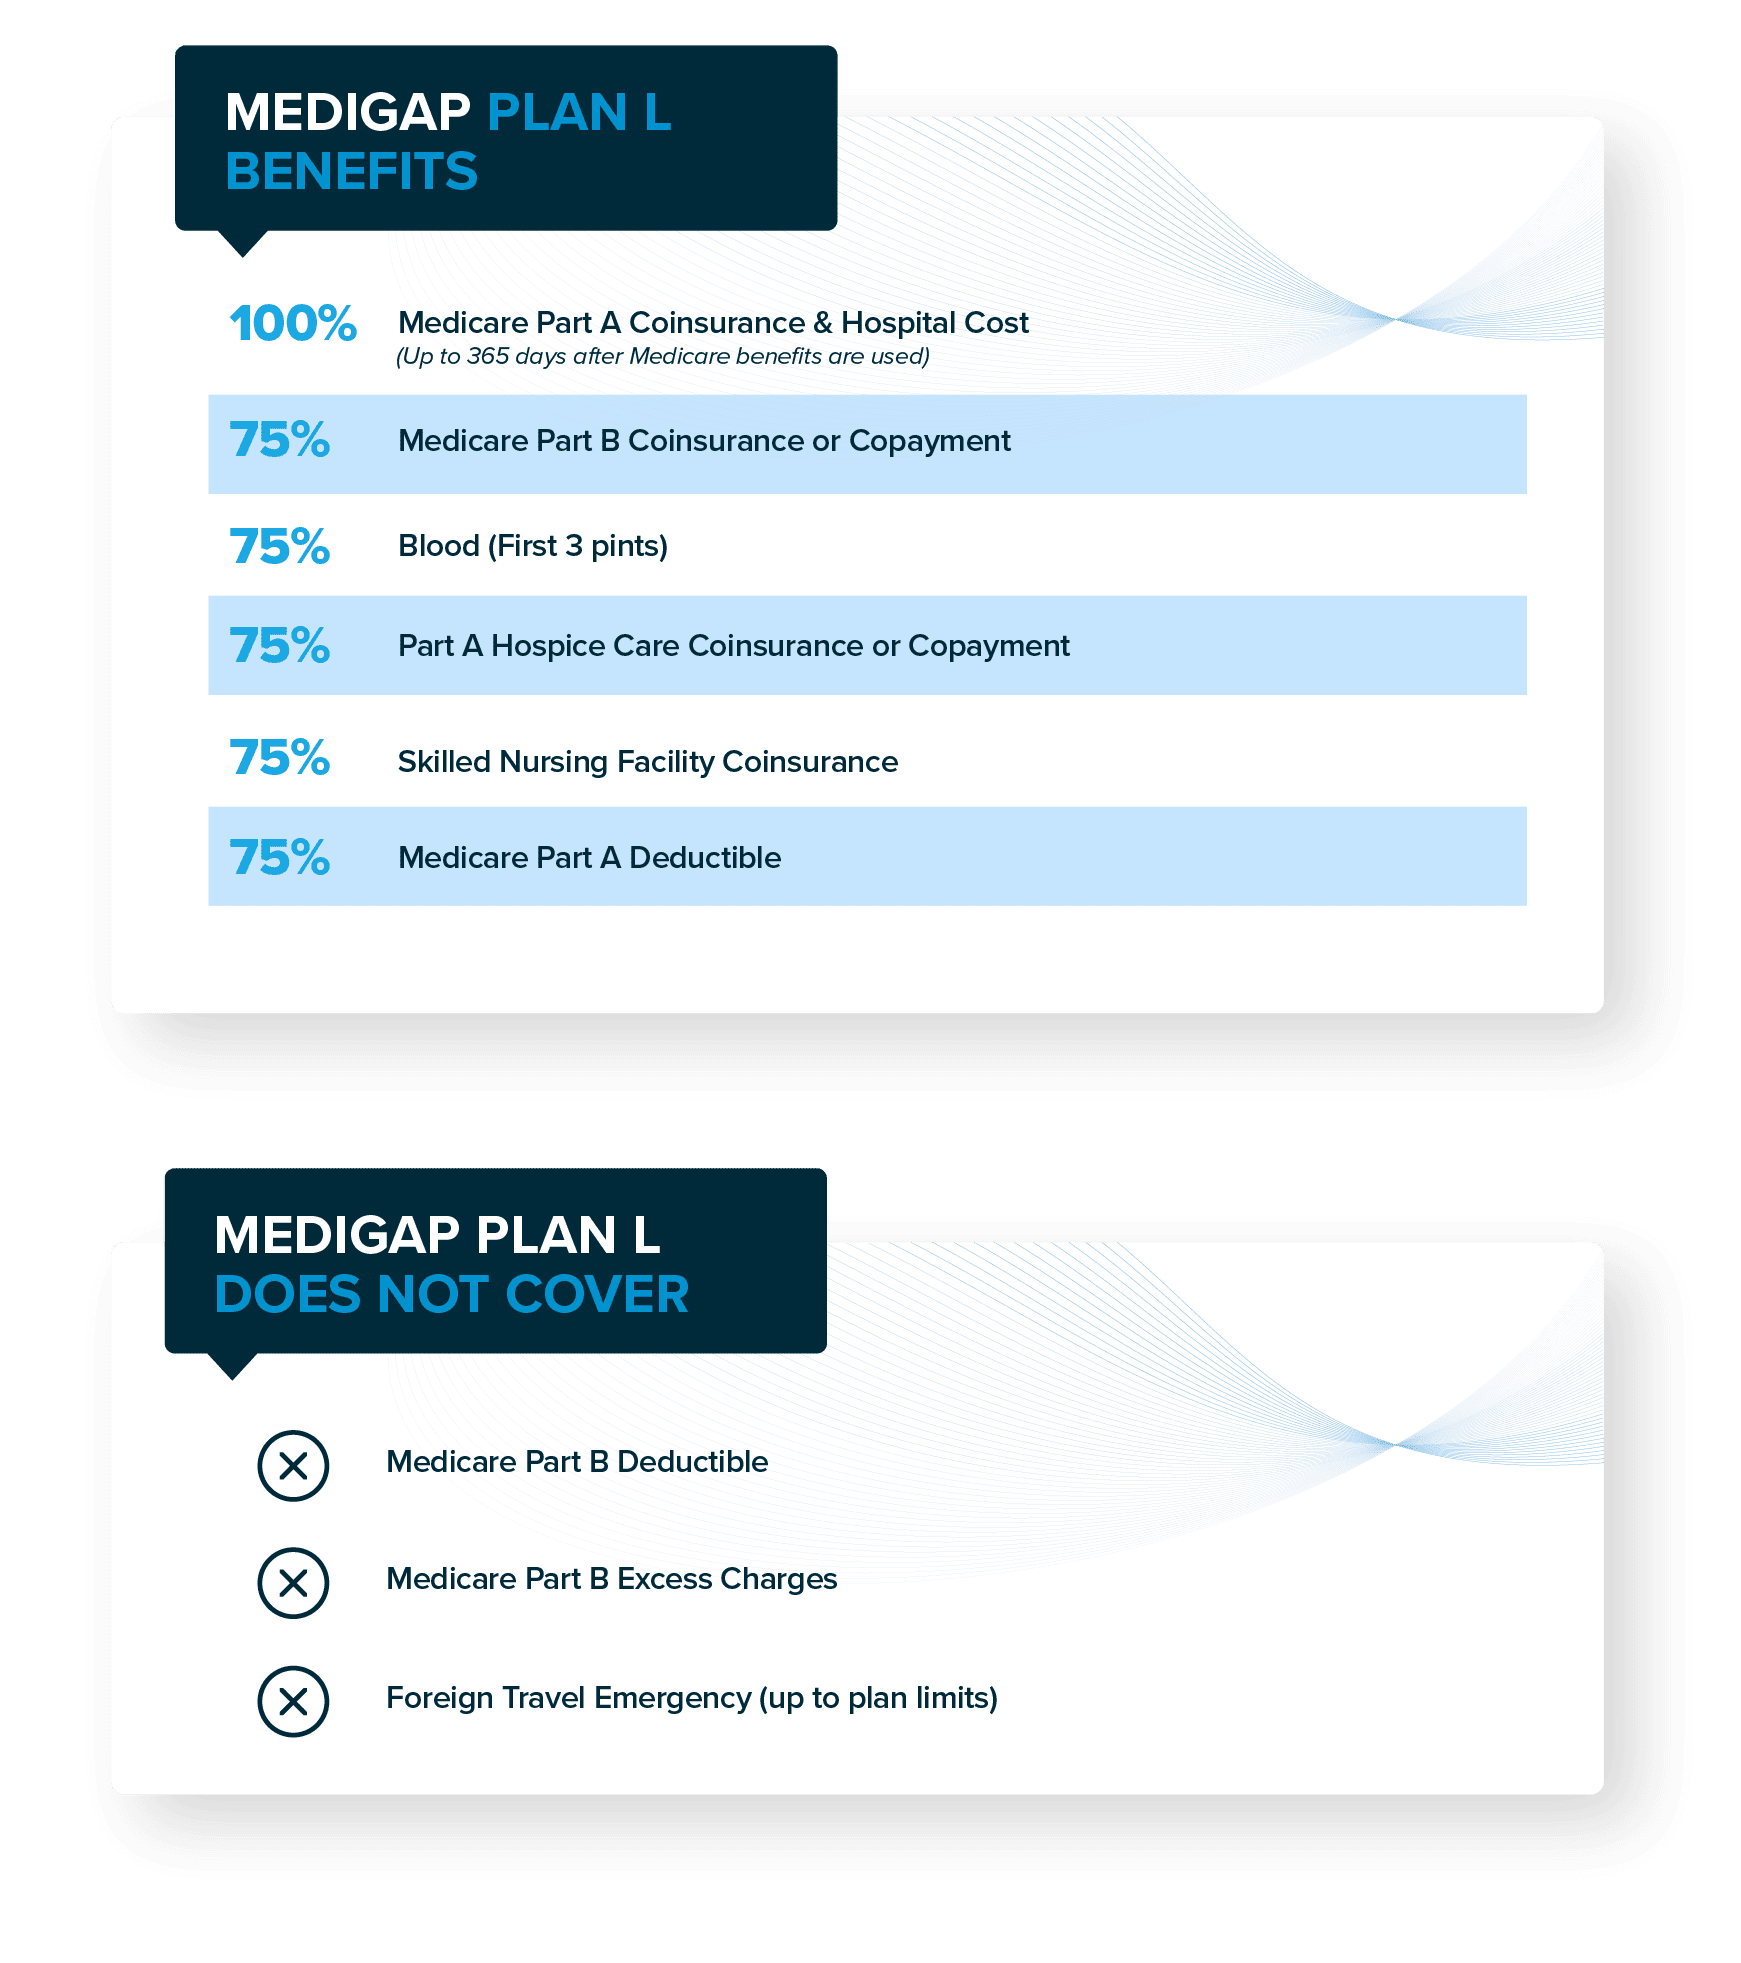 Medigap Plan L